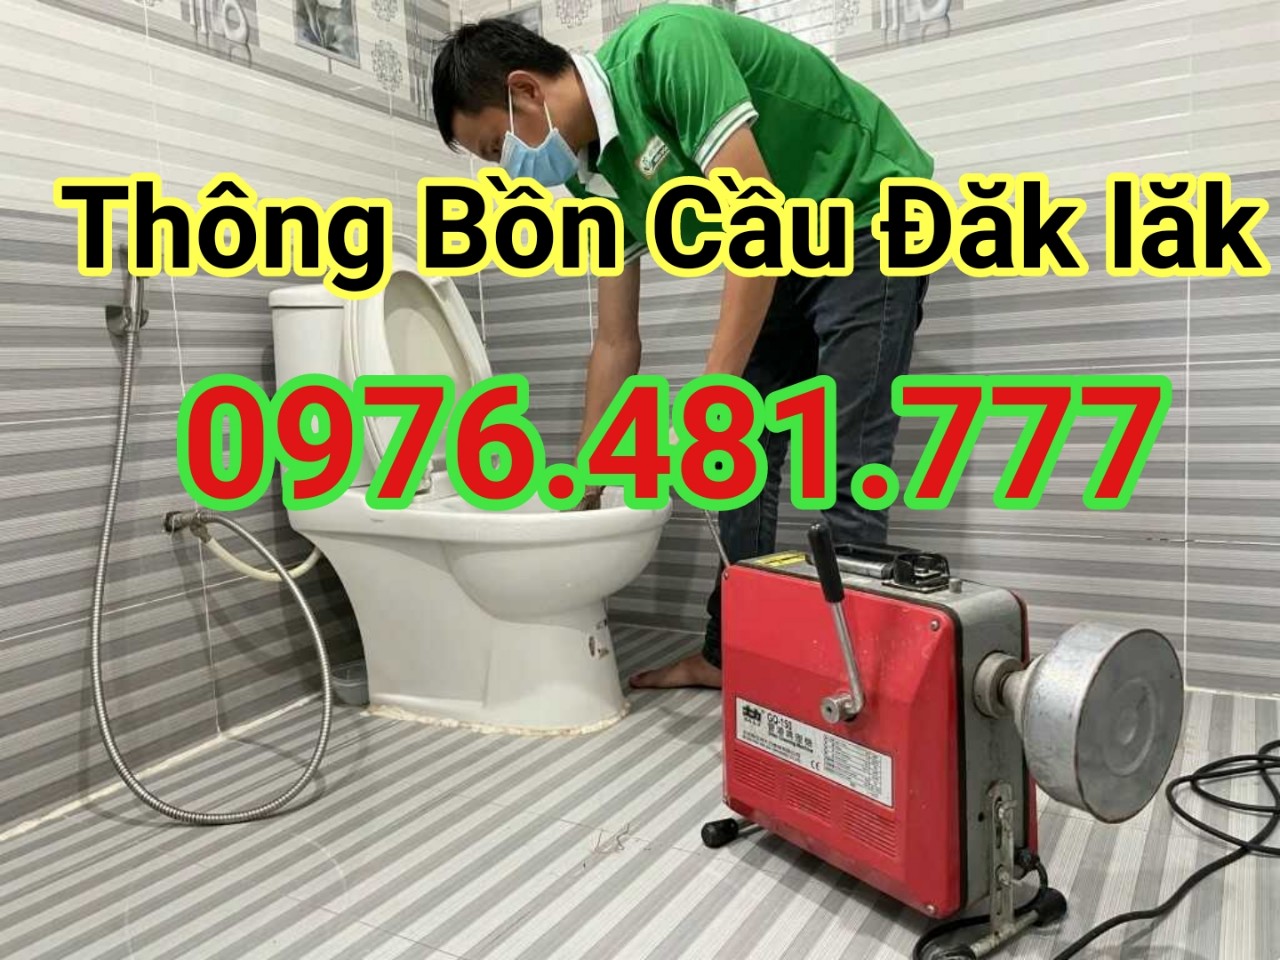 thong-bon-cau-dak-lak